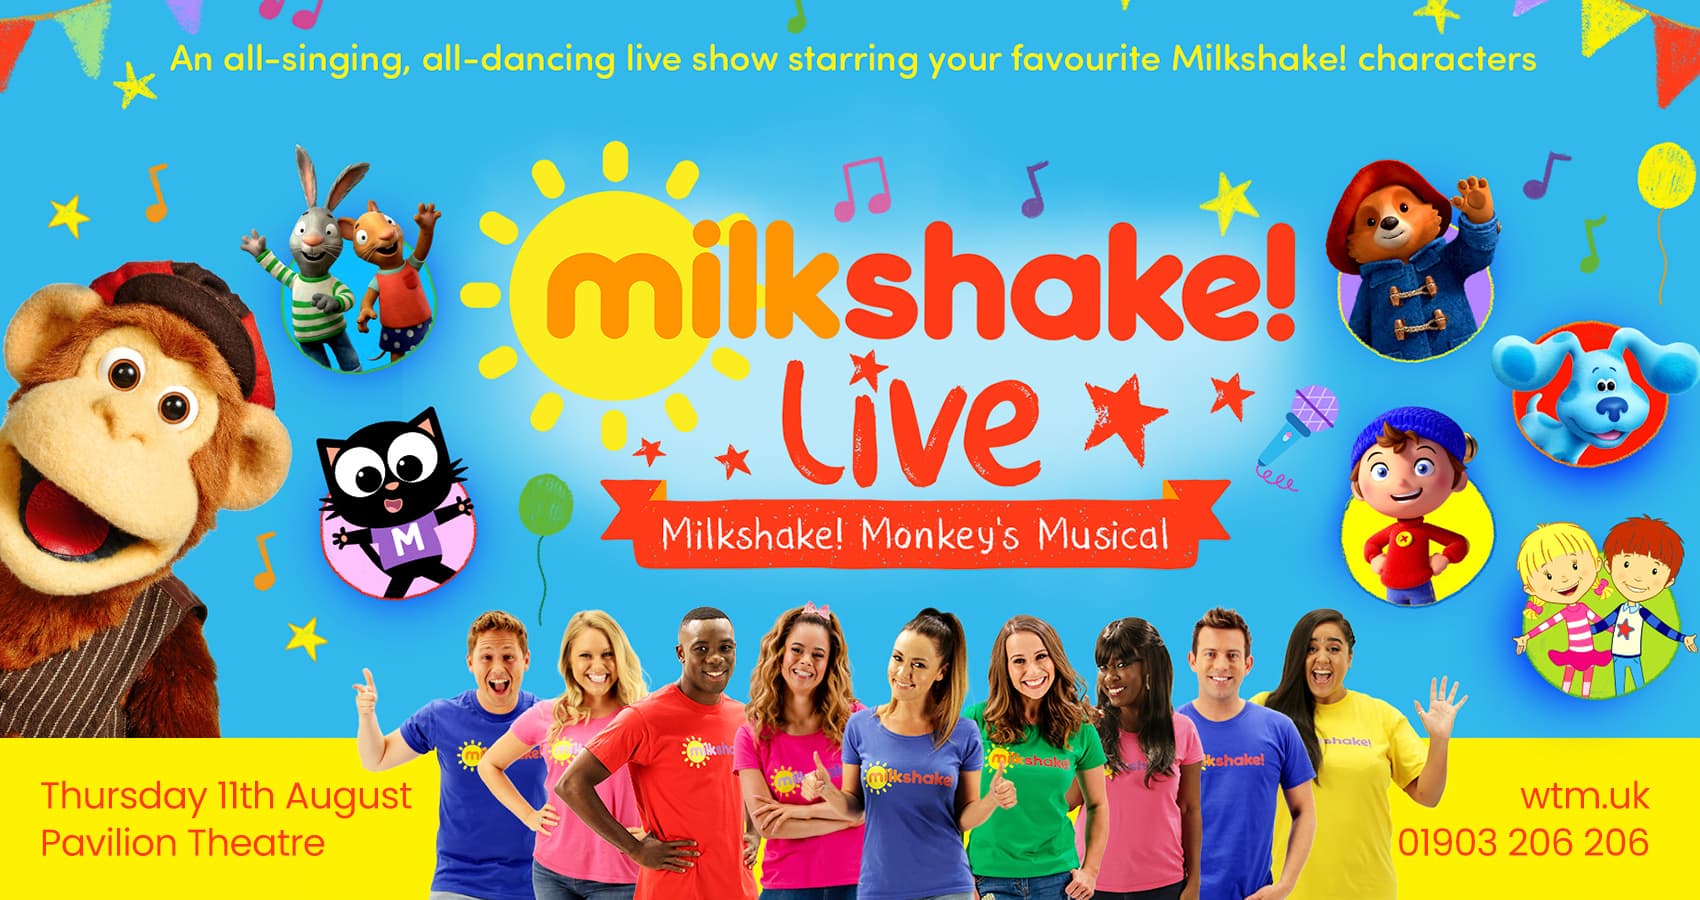 Milkshake! Live – Milkshake Monkey’s Musical 